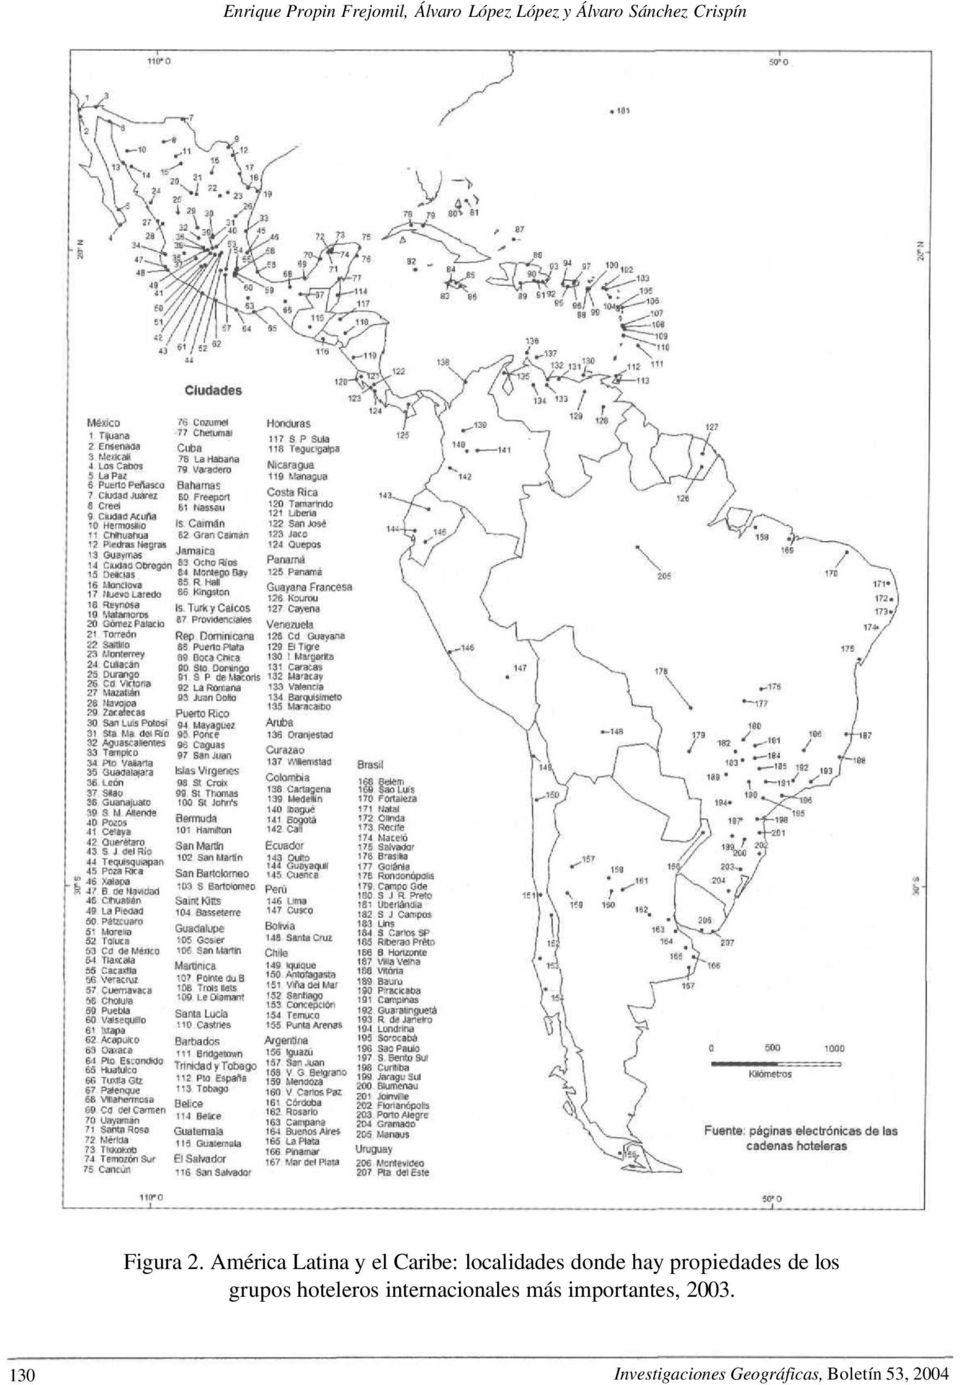 América Latina y el Caribe: localidades donde hay propiedades